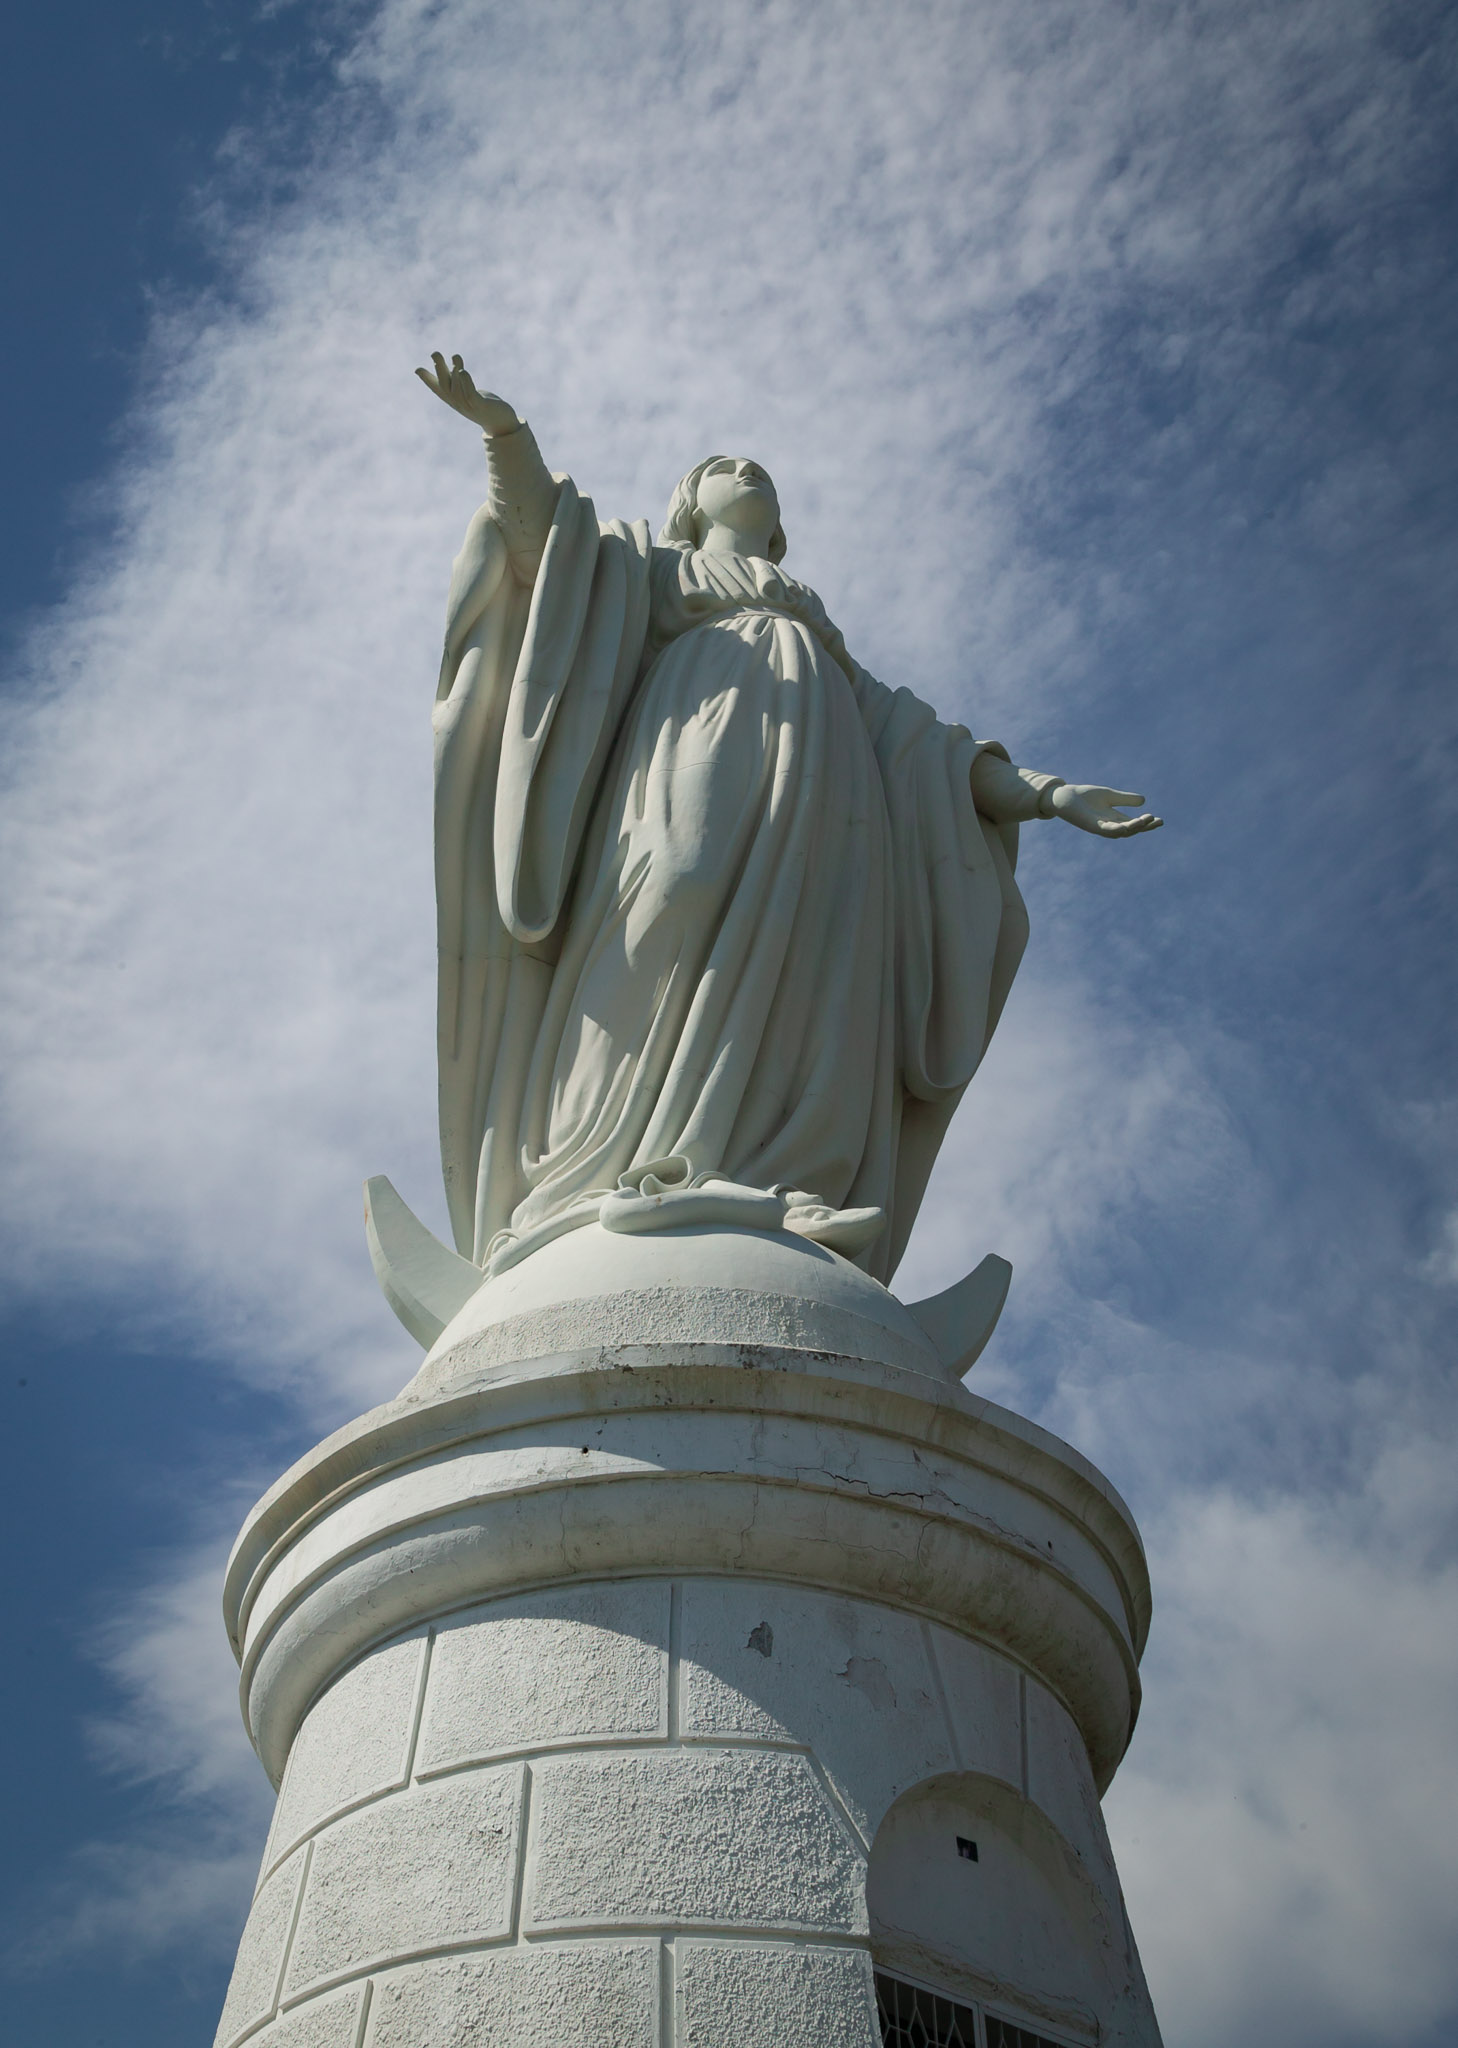 Statue on Cerro San Cristobal, Santiago